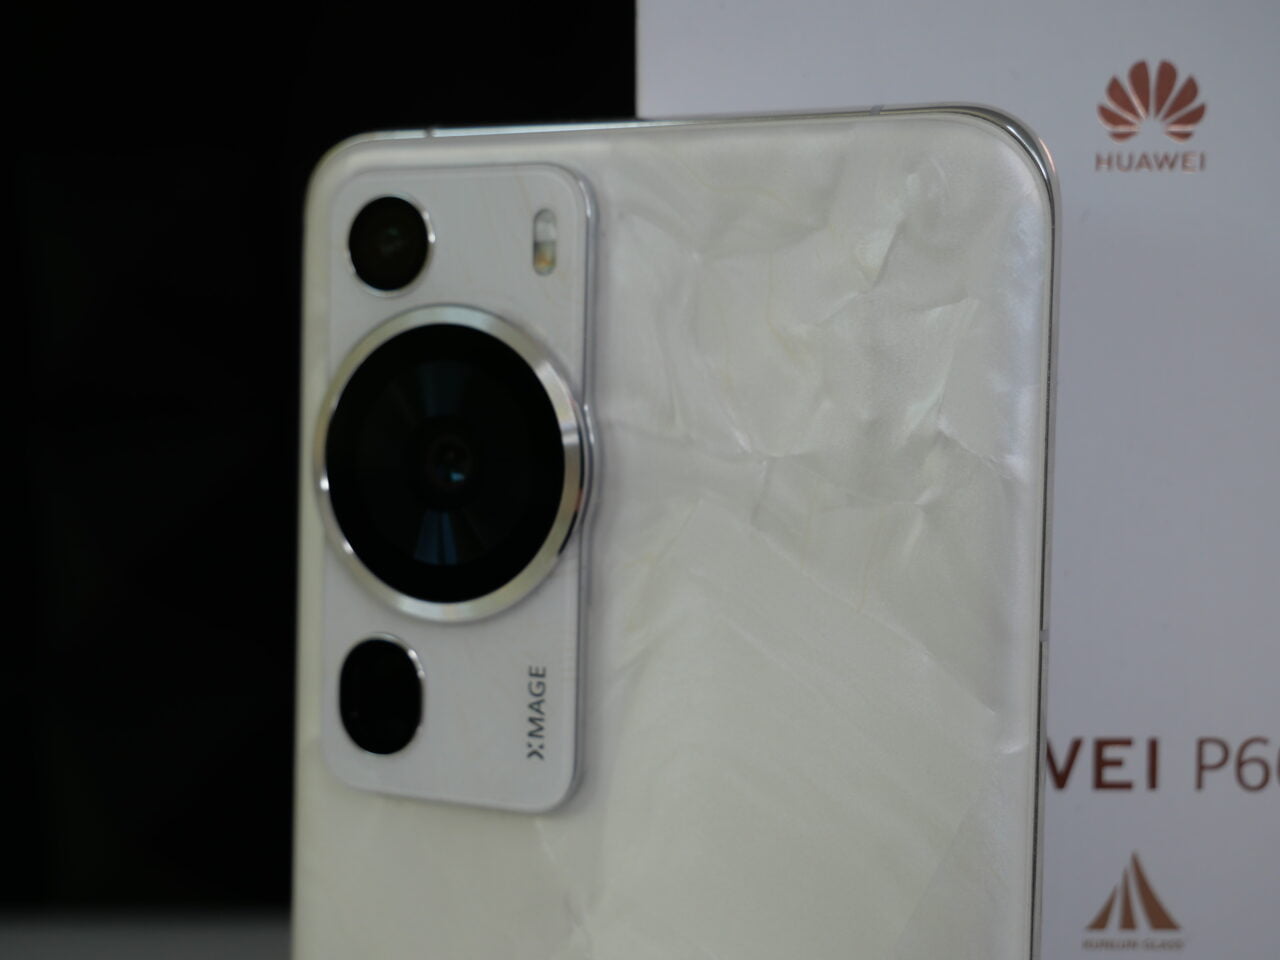 Tylna część smartfona Huawei z widocznym modułem aparatu o podwójnym obiektywie i etykietą XMAGE, umieszczona na tle opakowania z logo Huawei.